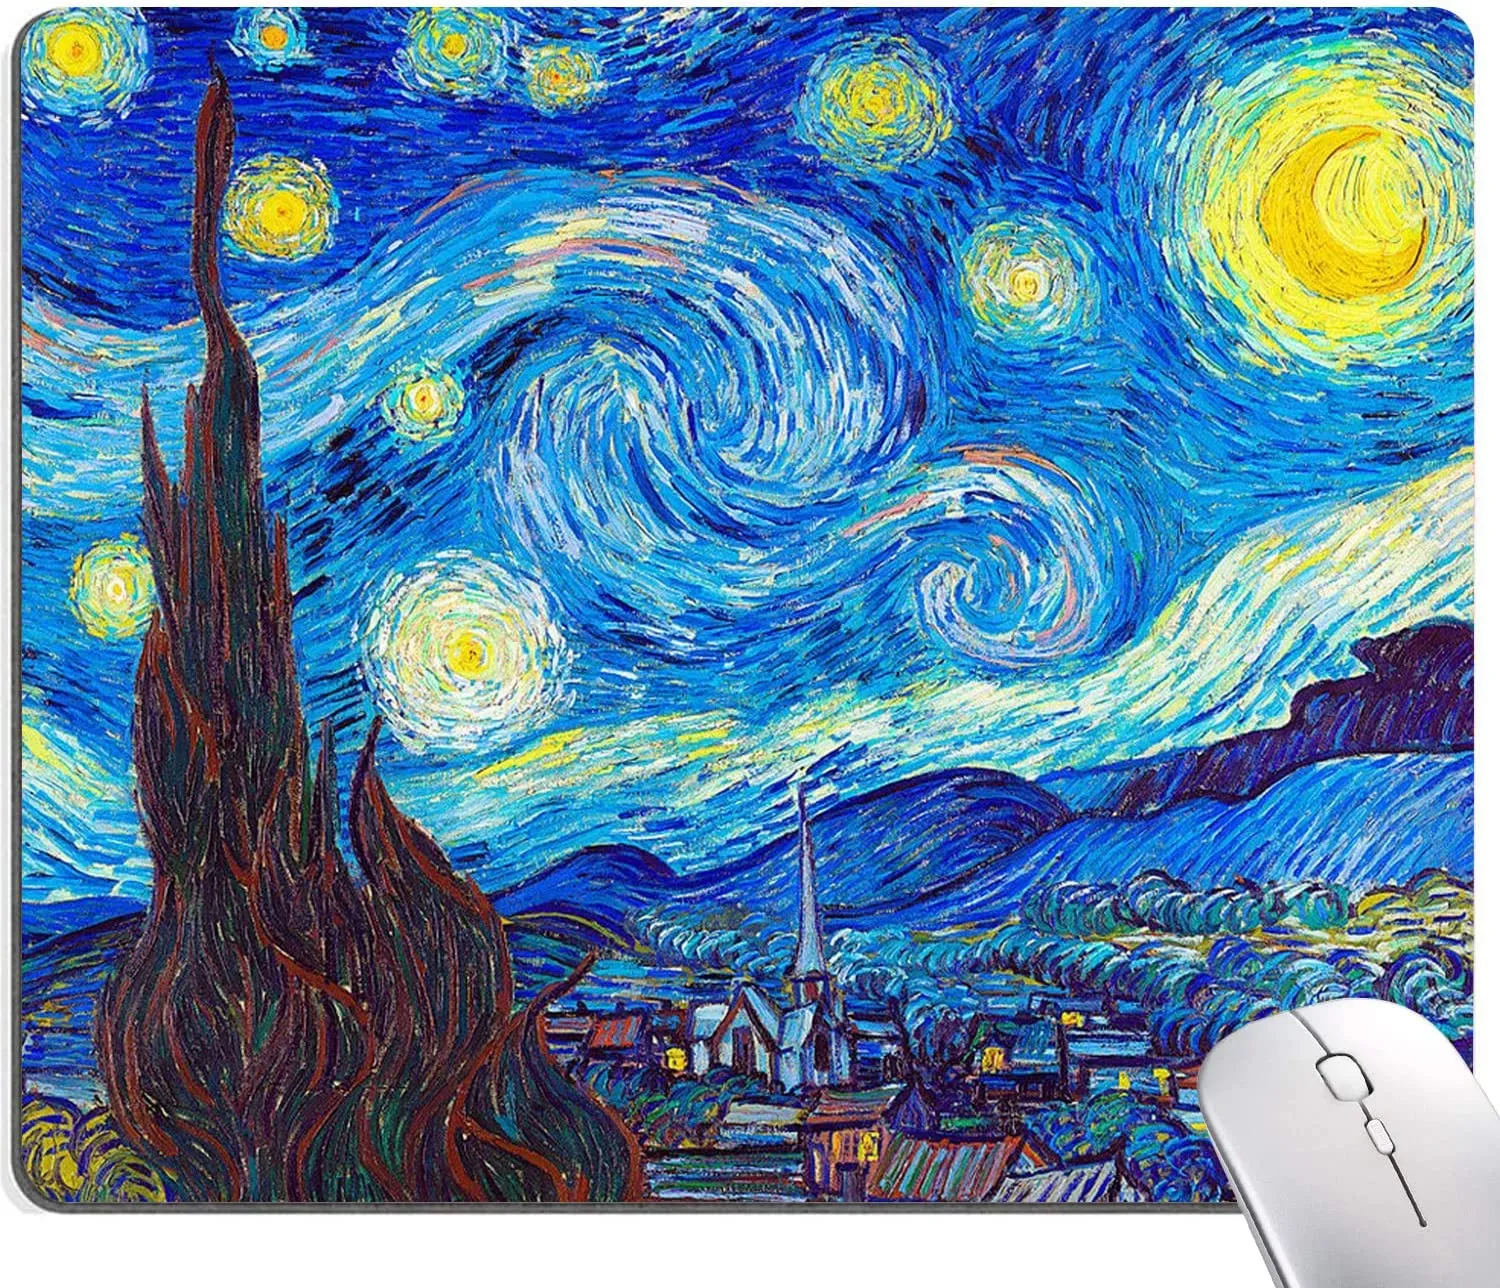 Olieverf muismat met Van Gogh sterrenhemel Premium getextureerde muismat Waterdichte antislip rubberen basis voor kantoorlaptop